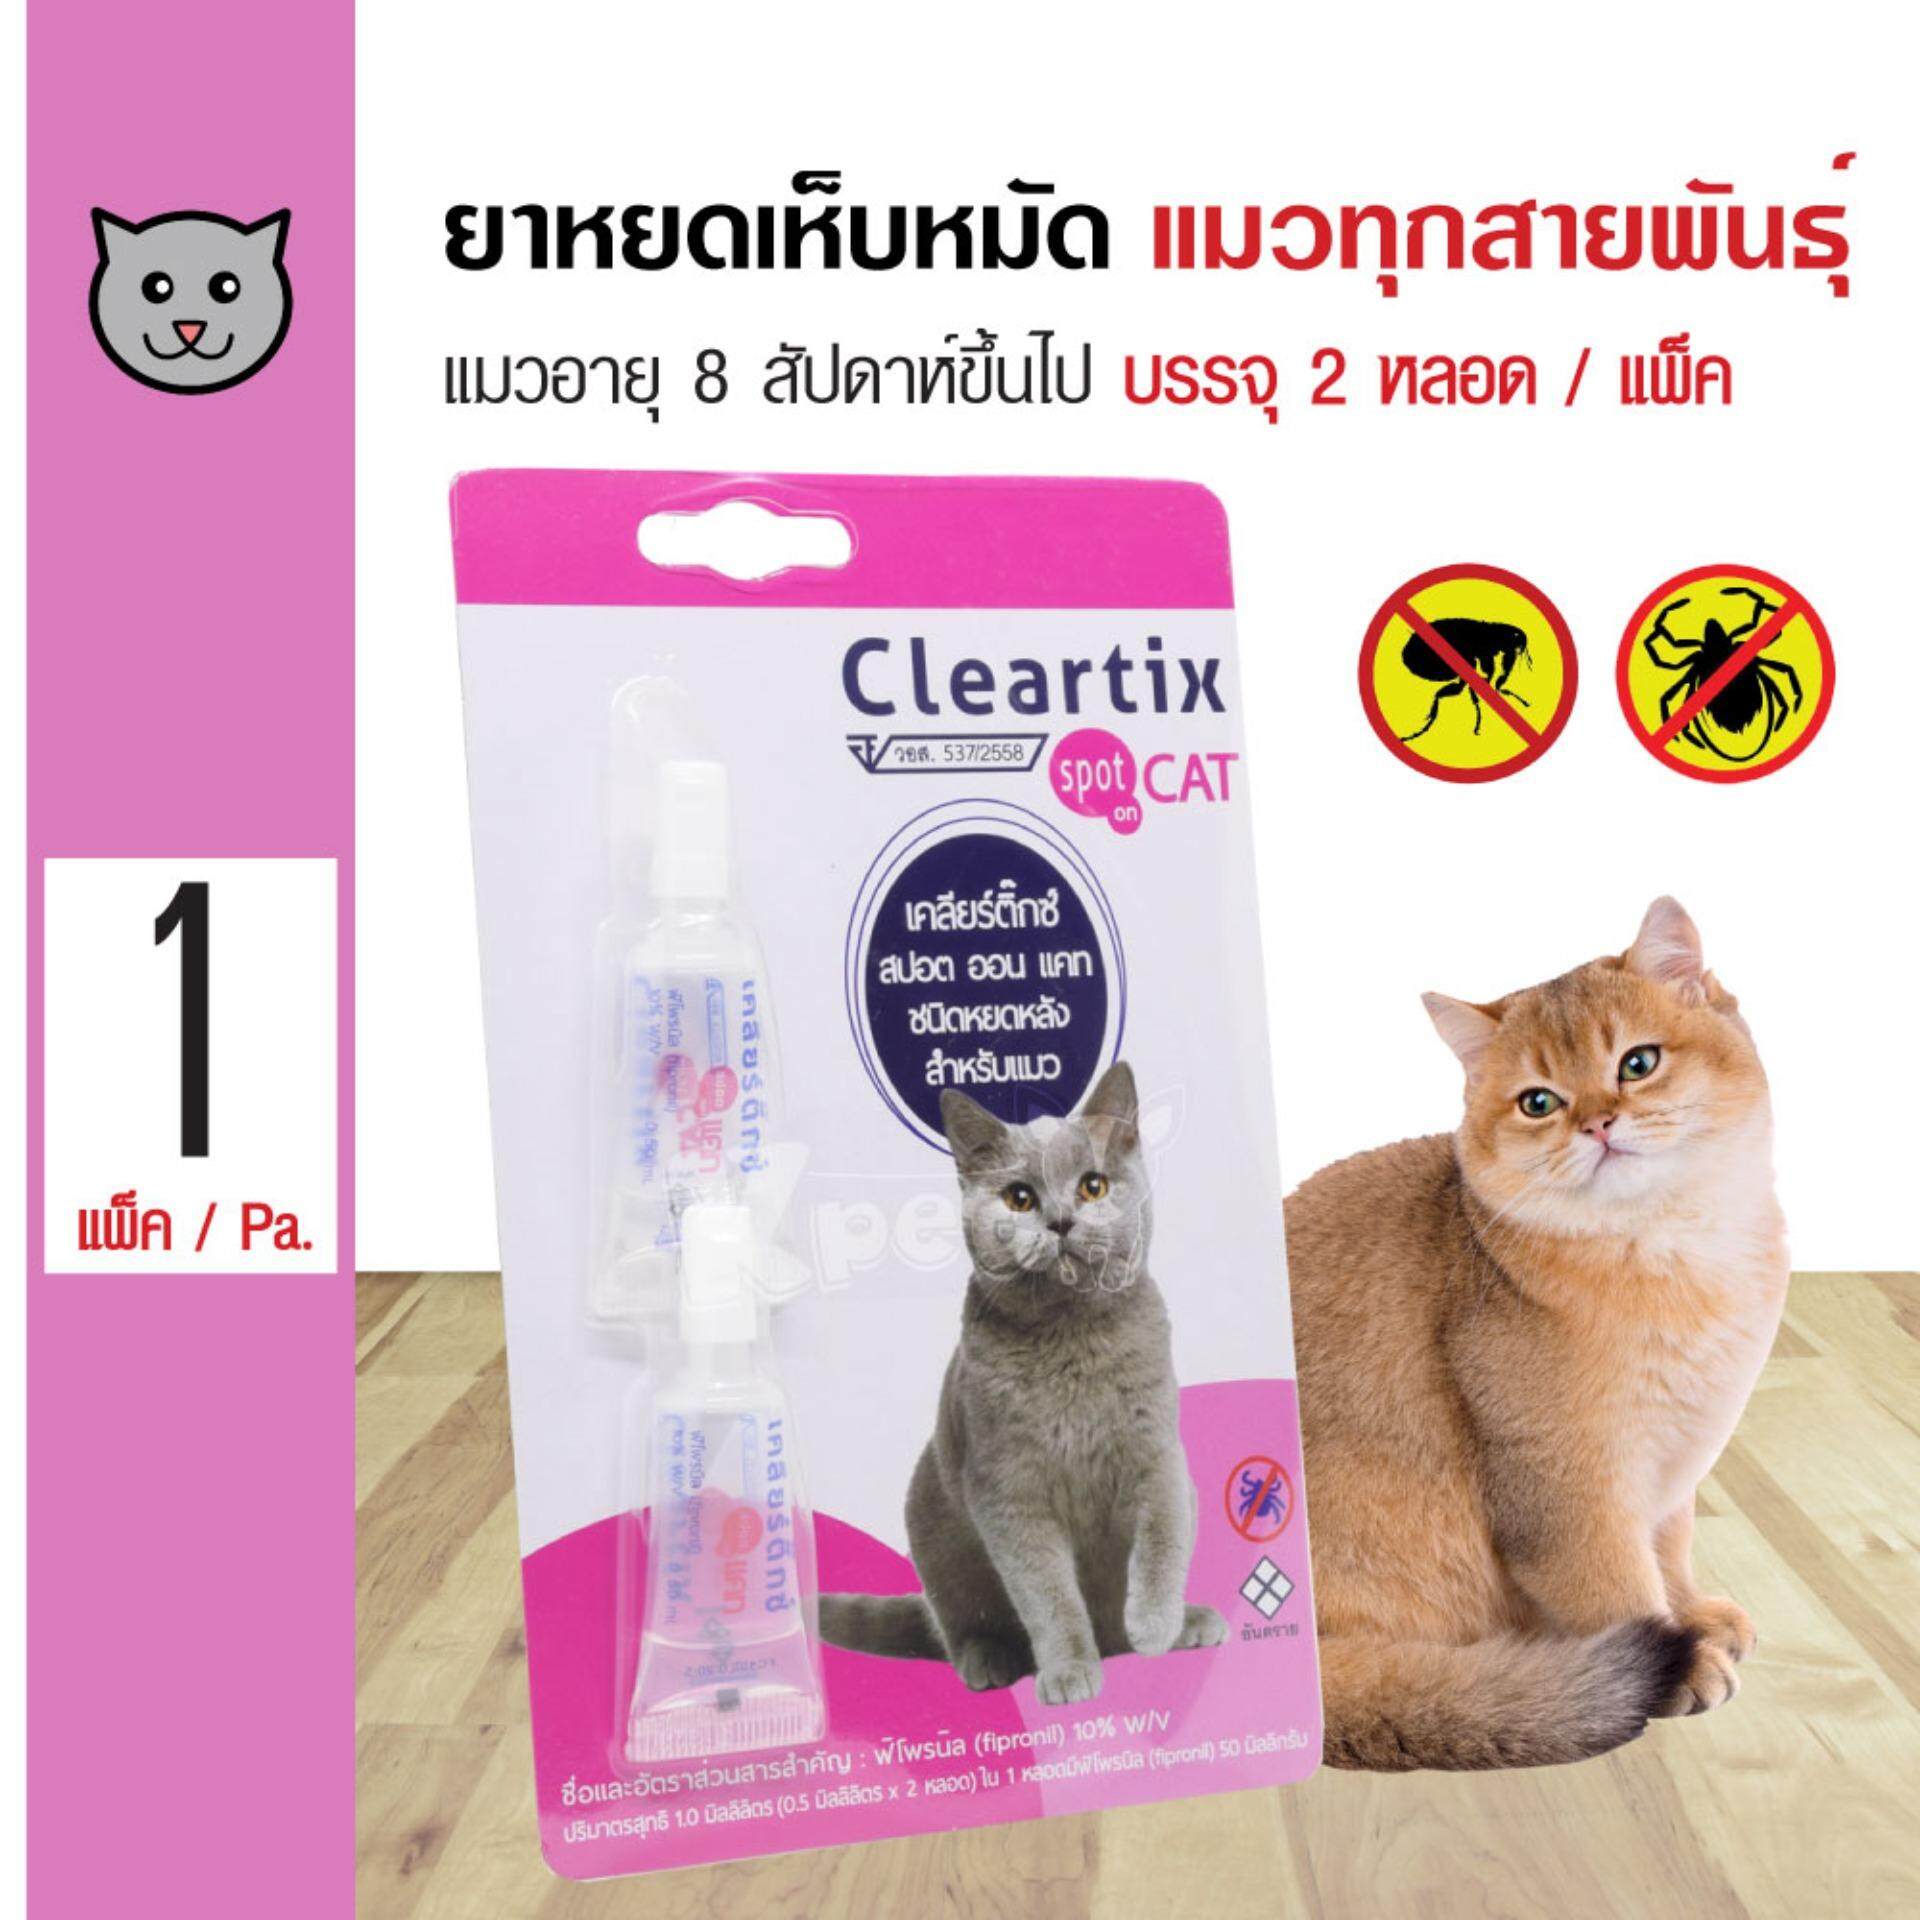 Cleartix Cat ยาหยอดหลัง ยาหยดเห็บหมัด สำหรับแมว อายุ 8 สัปดาห์ขึ้นไป (2 หลอด/ แพ็ค)